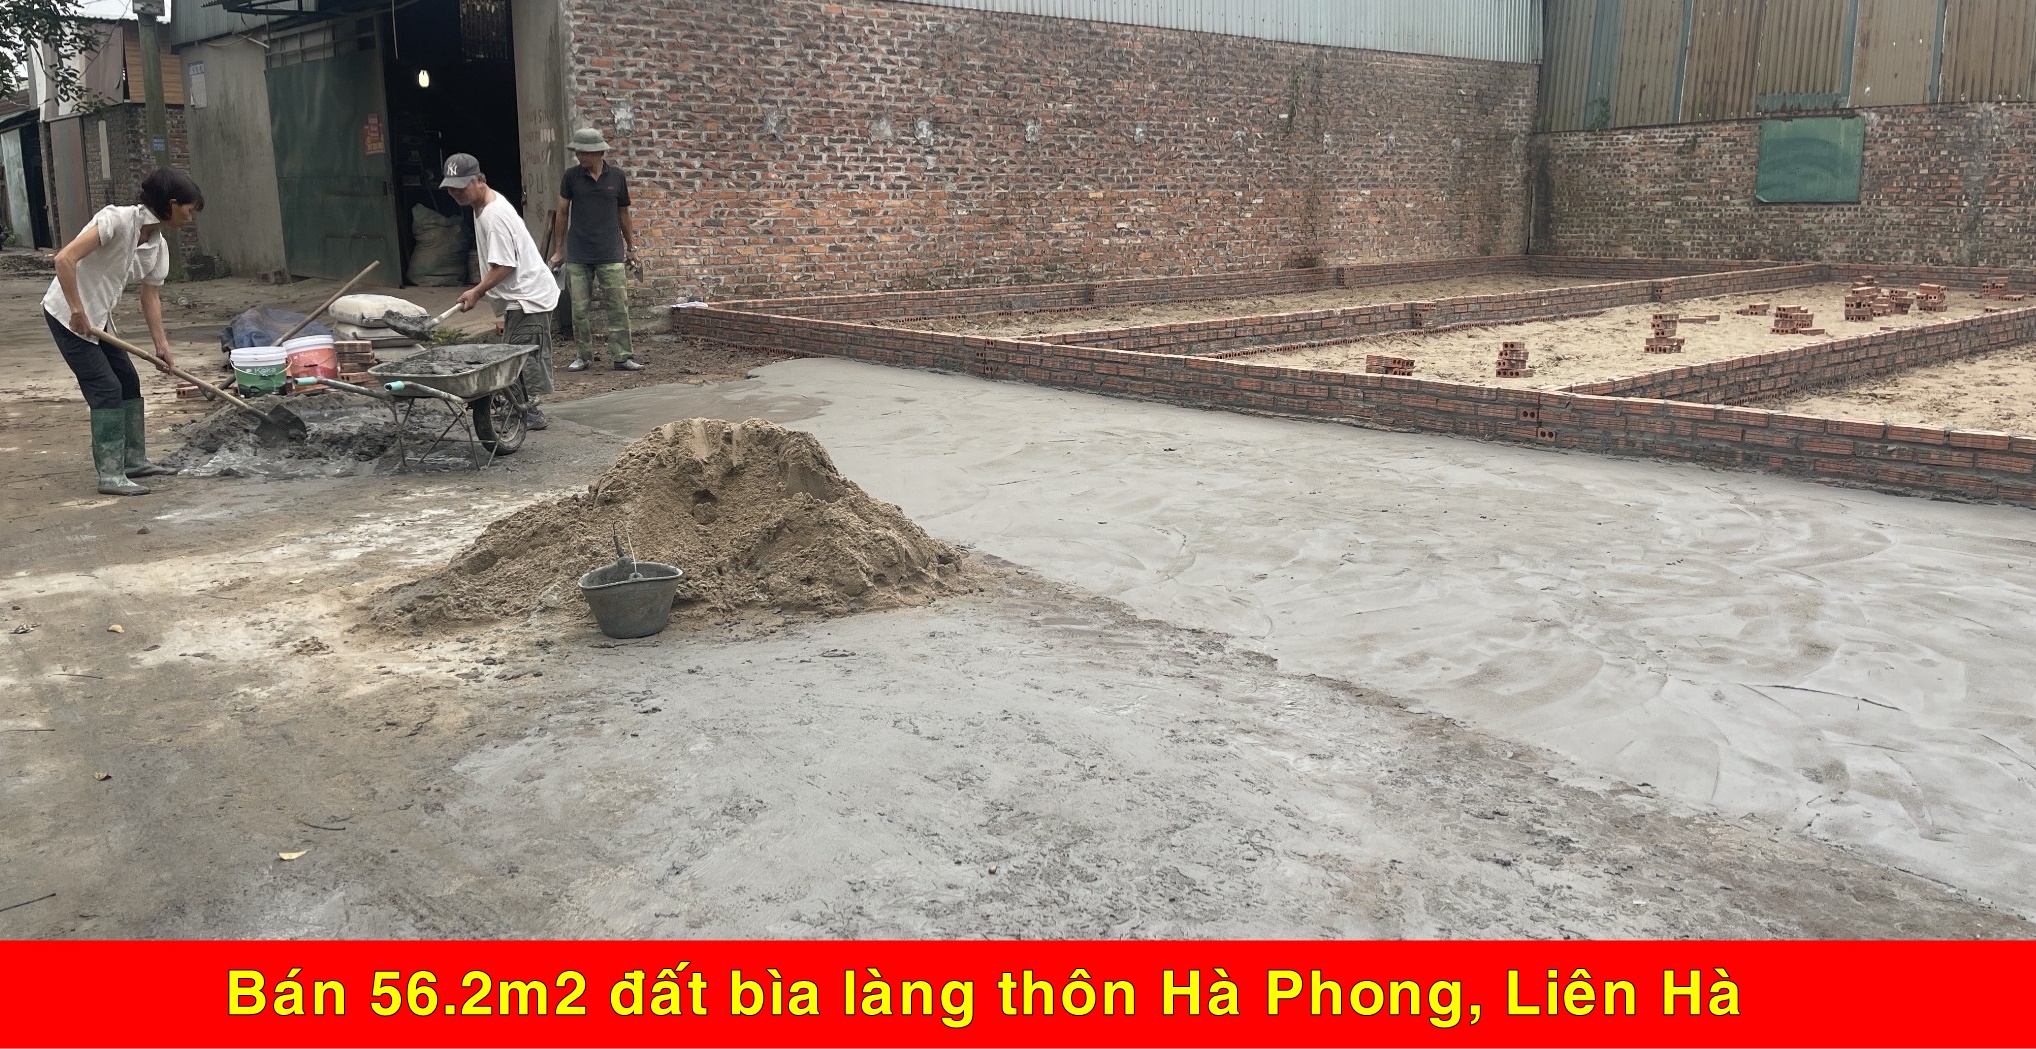 Chính chủ gửi bán 56,2m2 đất bìa làng thôn Hà Phong, Liên Hà - Ảnh chính